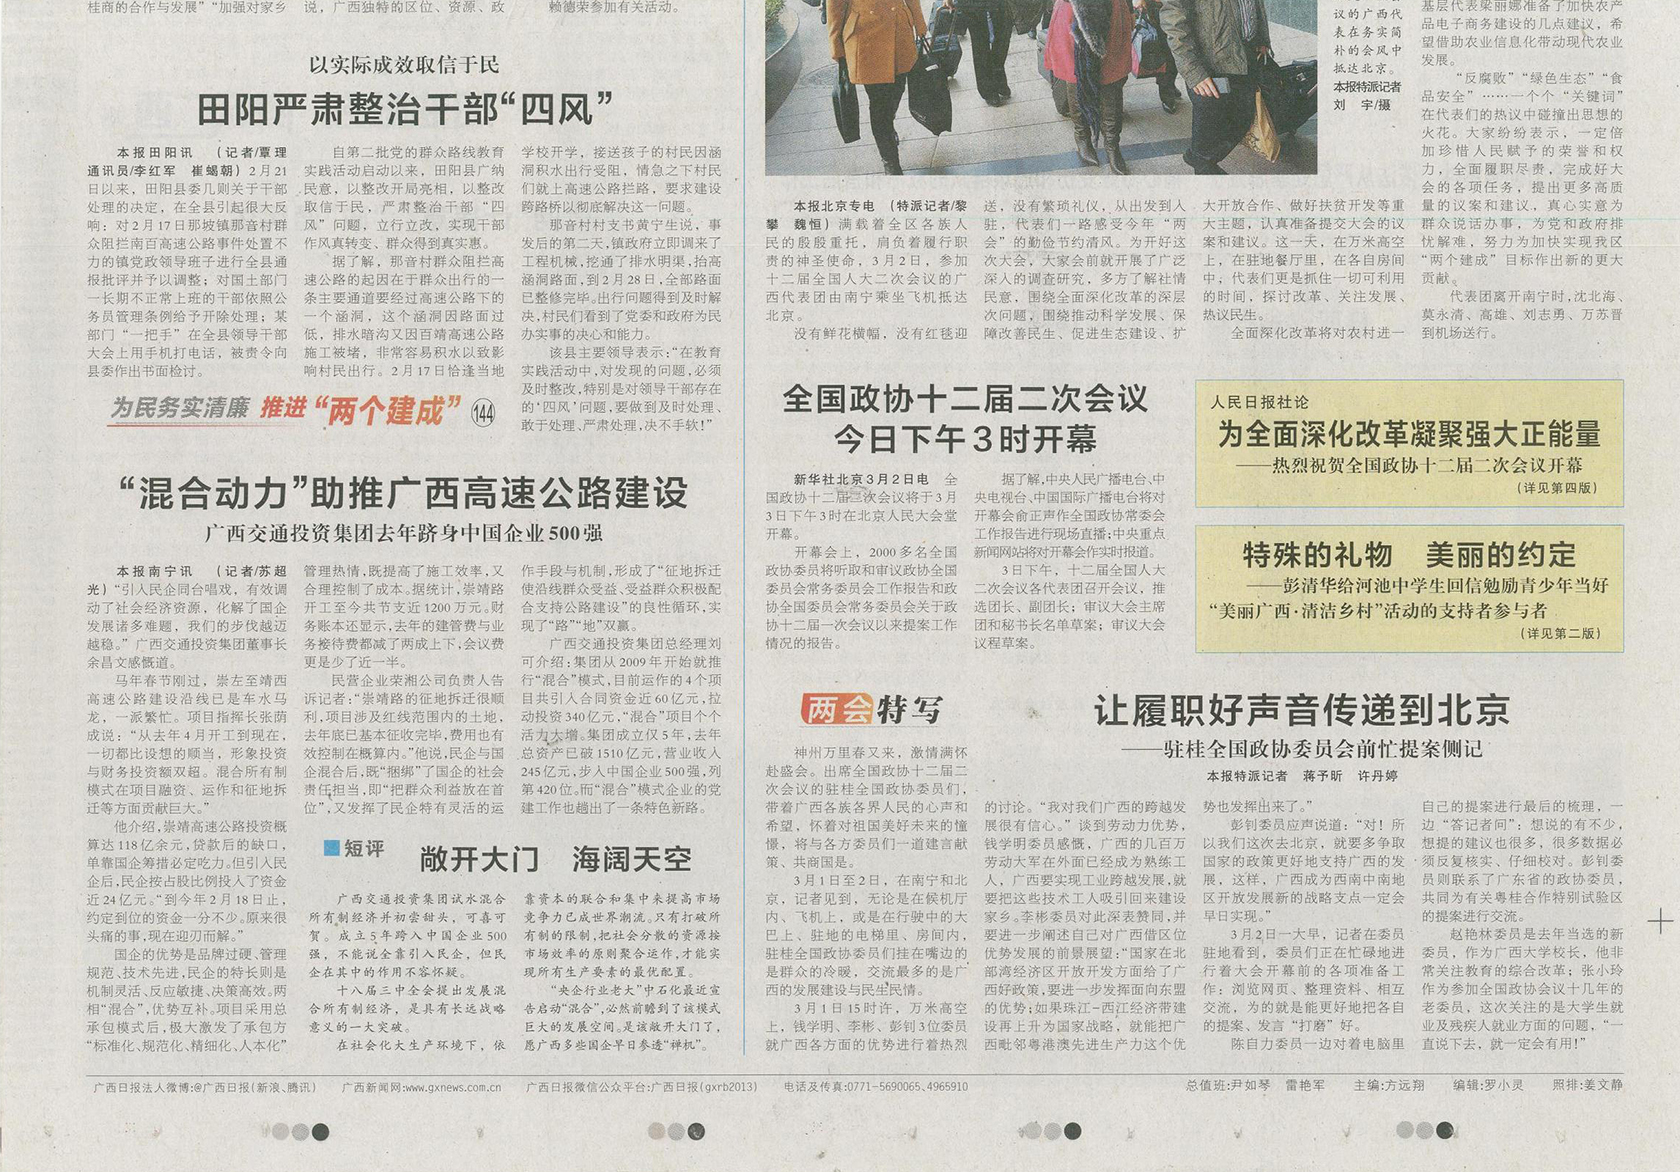 广西日报2014年3月3日第1版—“混合动力”助推广西高速公路建设